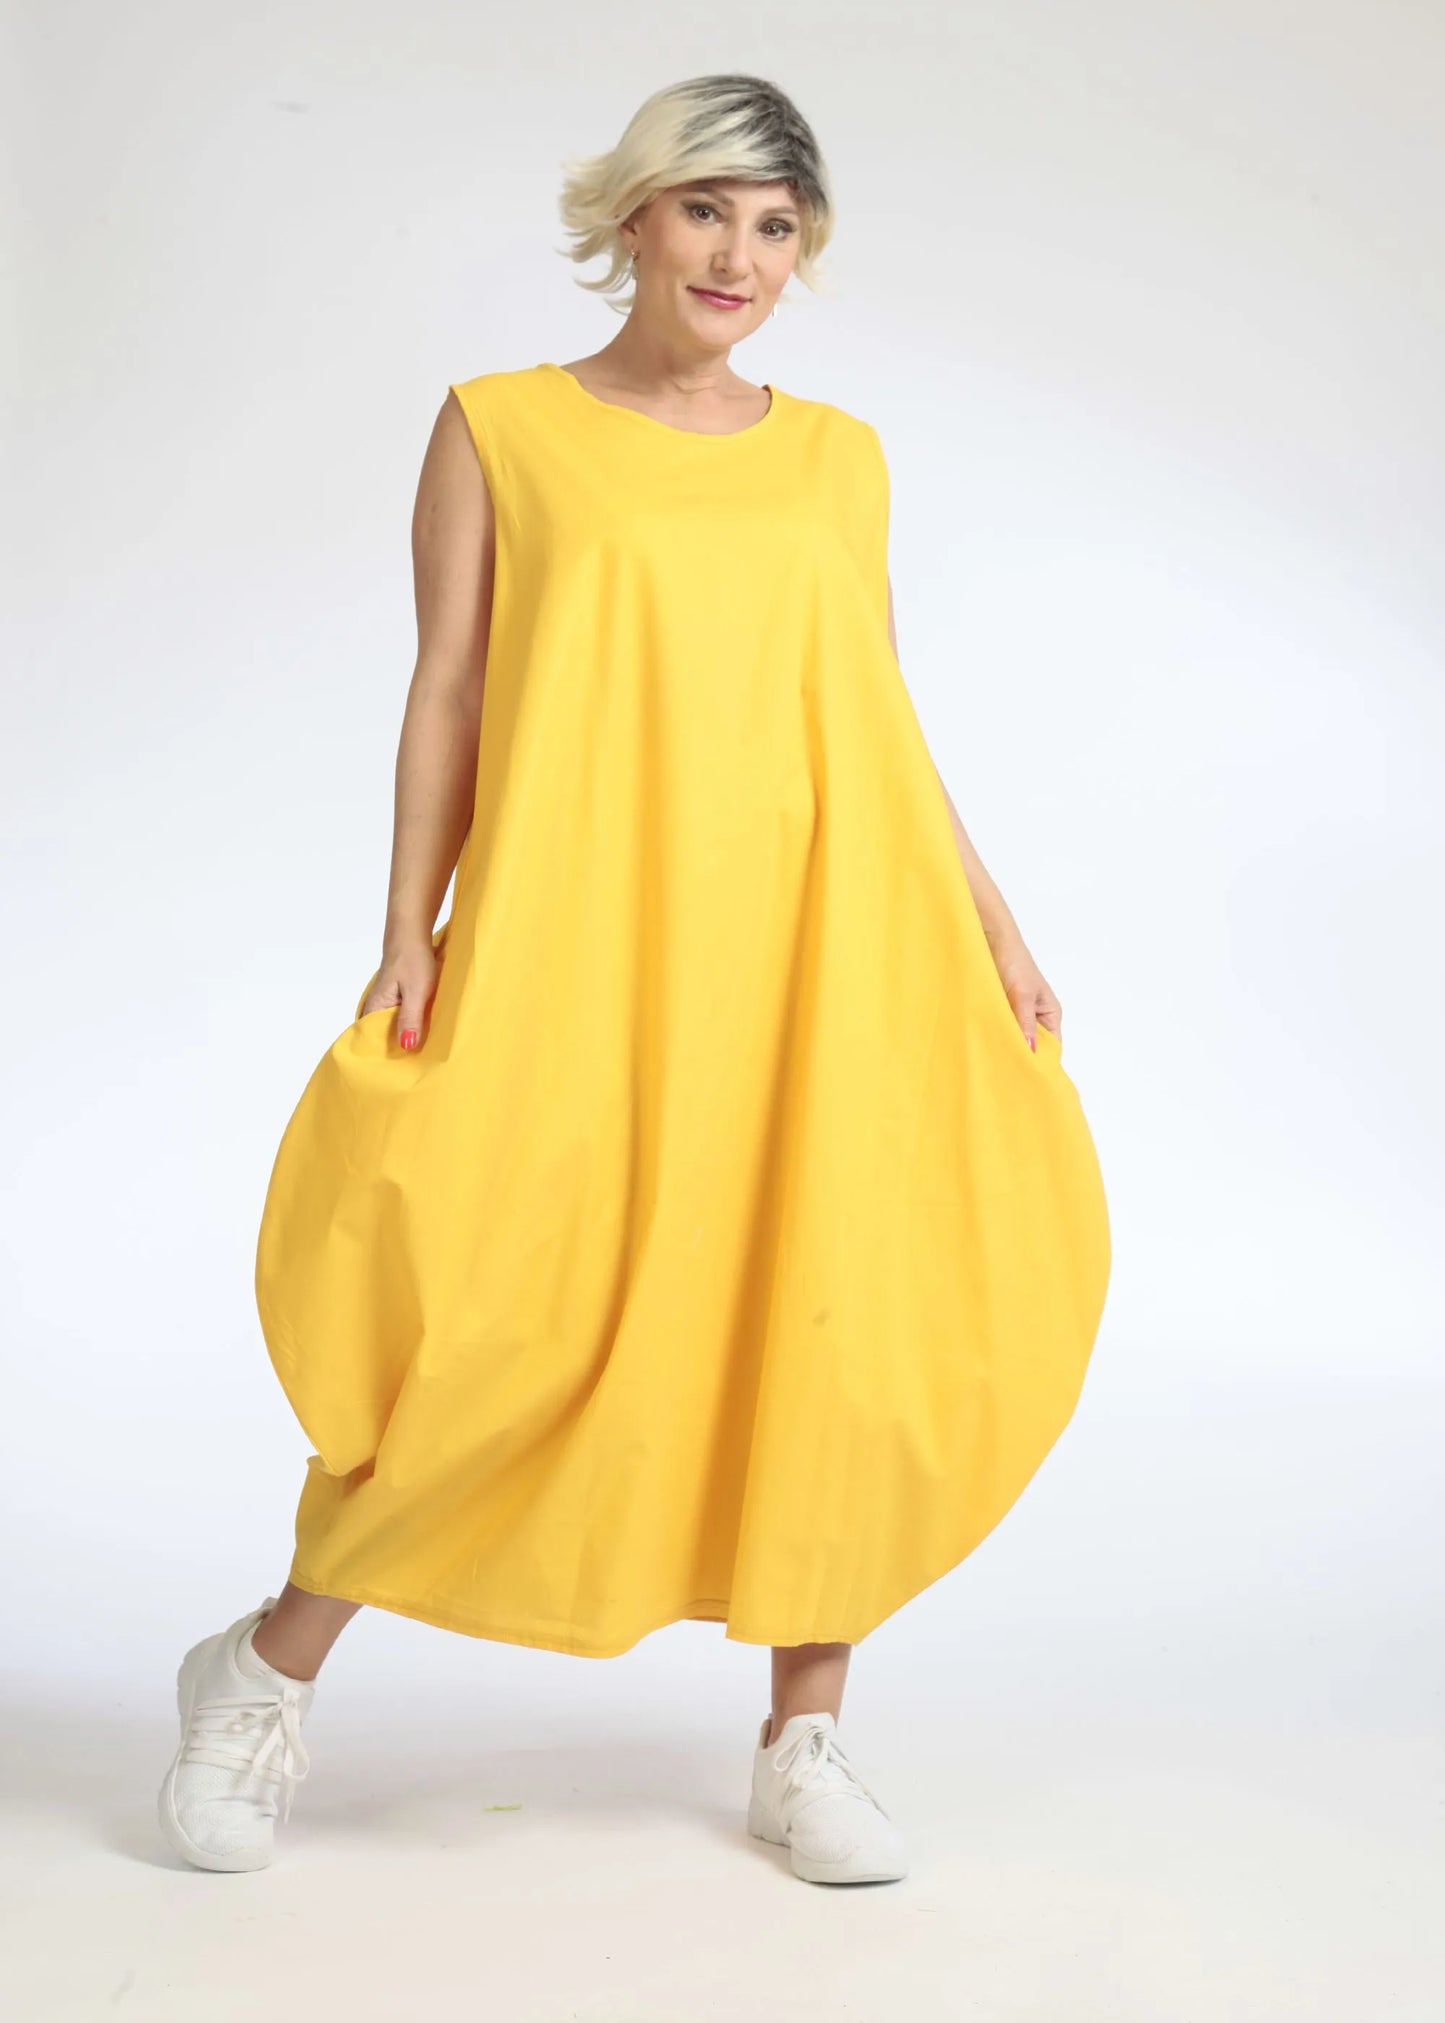 Sommer Kleid in Ballon Form aus glatter Popeline Qualität, Hazel in Gelb